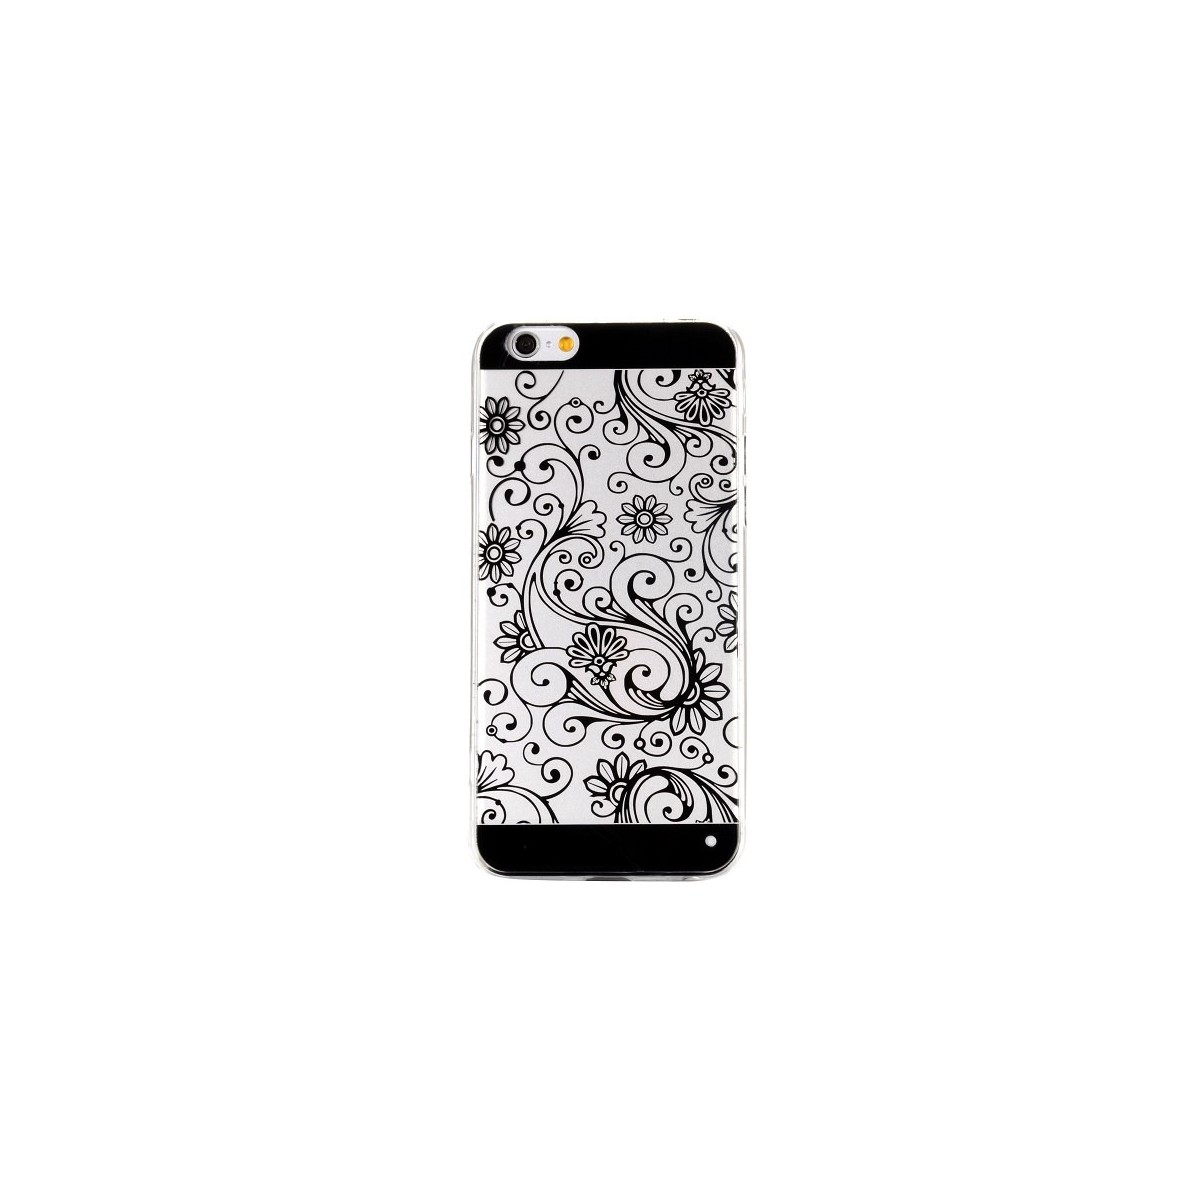 Coque iPhone 6 motif fleurs noires